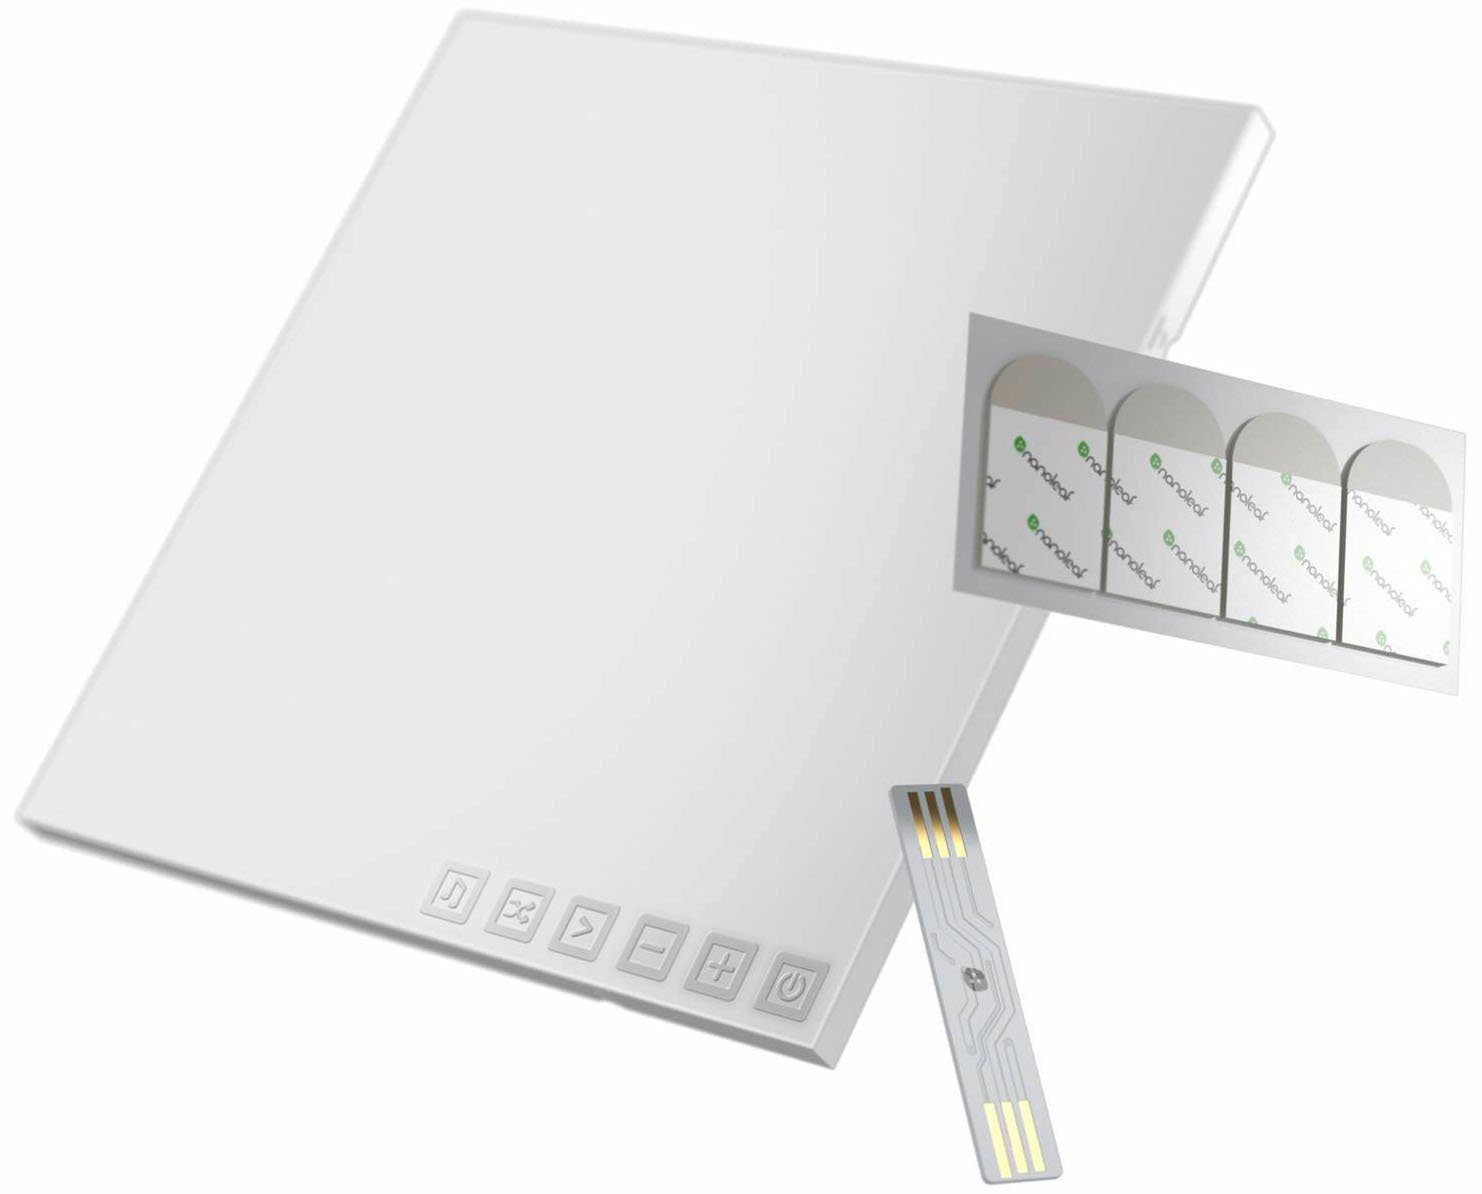 LED integriert, LED Canvas, Panel fest nanoleaf Farbwechsler Dimmfunktion,